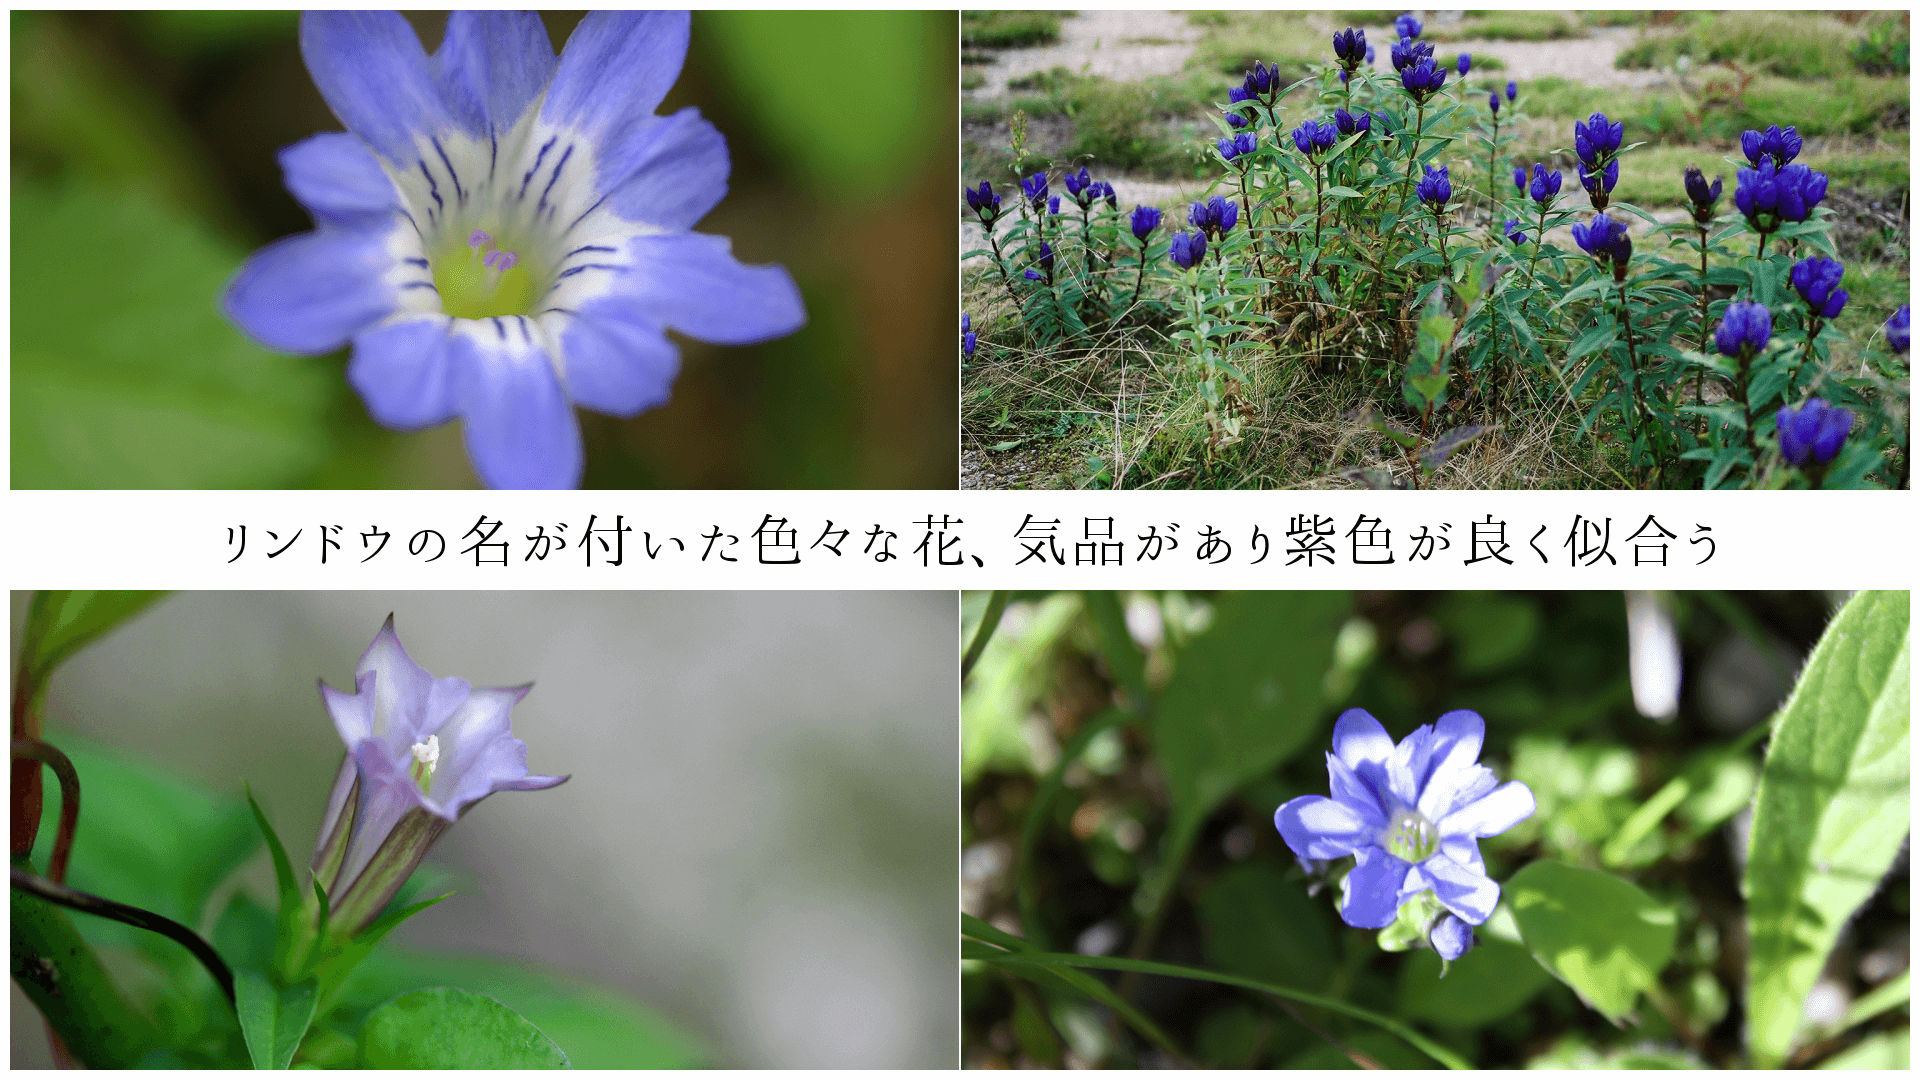 リンドウの名が付いた色々な花、気品があり紫色が良く似合う